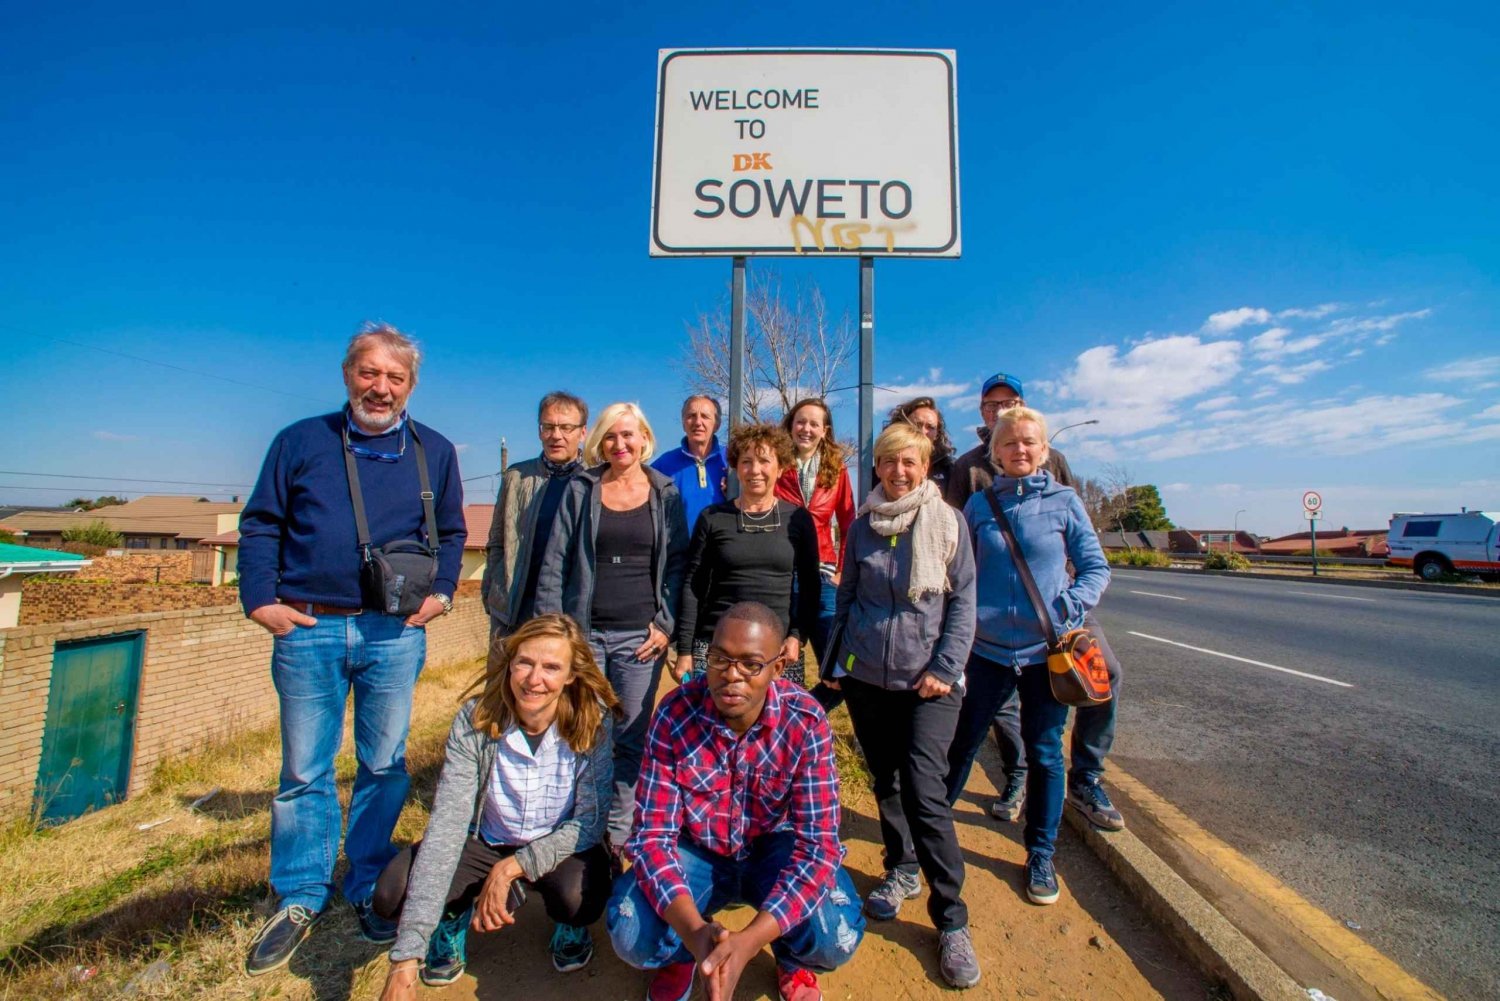 Johannesburgo: Soweto Apartheid & Township Tour con Almuerzo